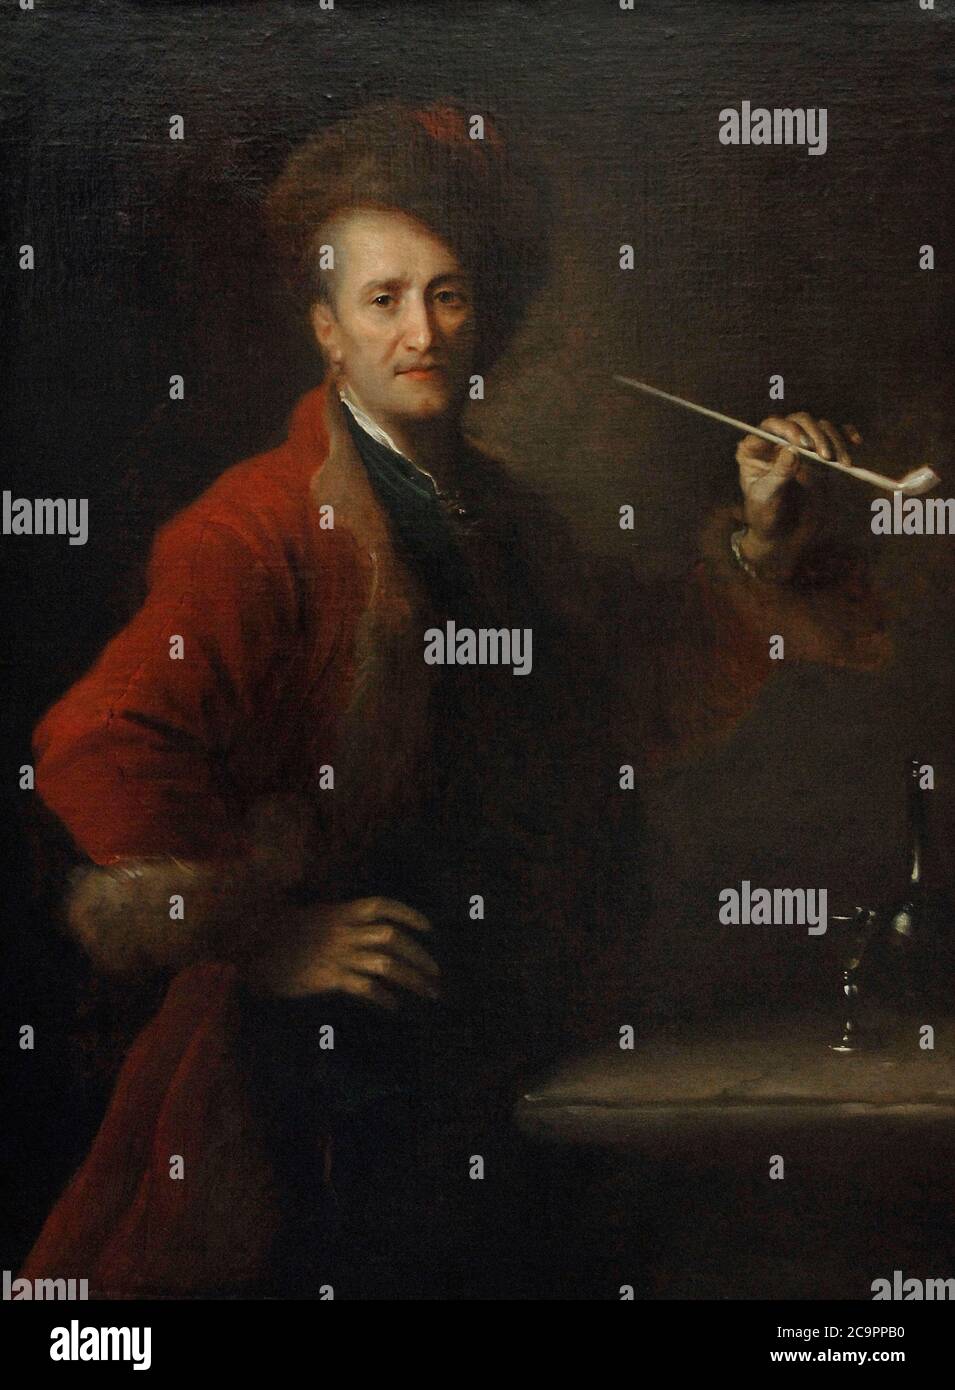 Alexis Grimou (1678-1733). Pintor francés. Retrato de hombre en traje polonés, una pipa en la mano,1726. Museo del Louvre. París. Francia. Stock Photo